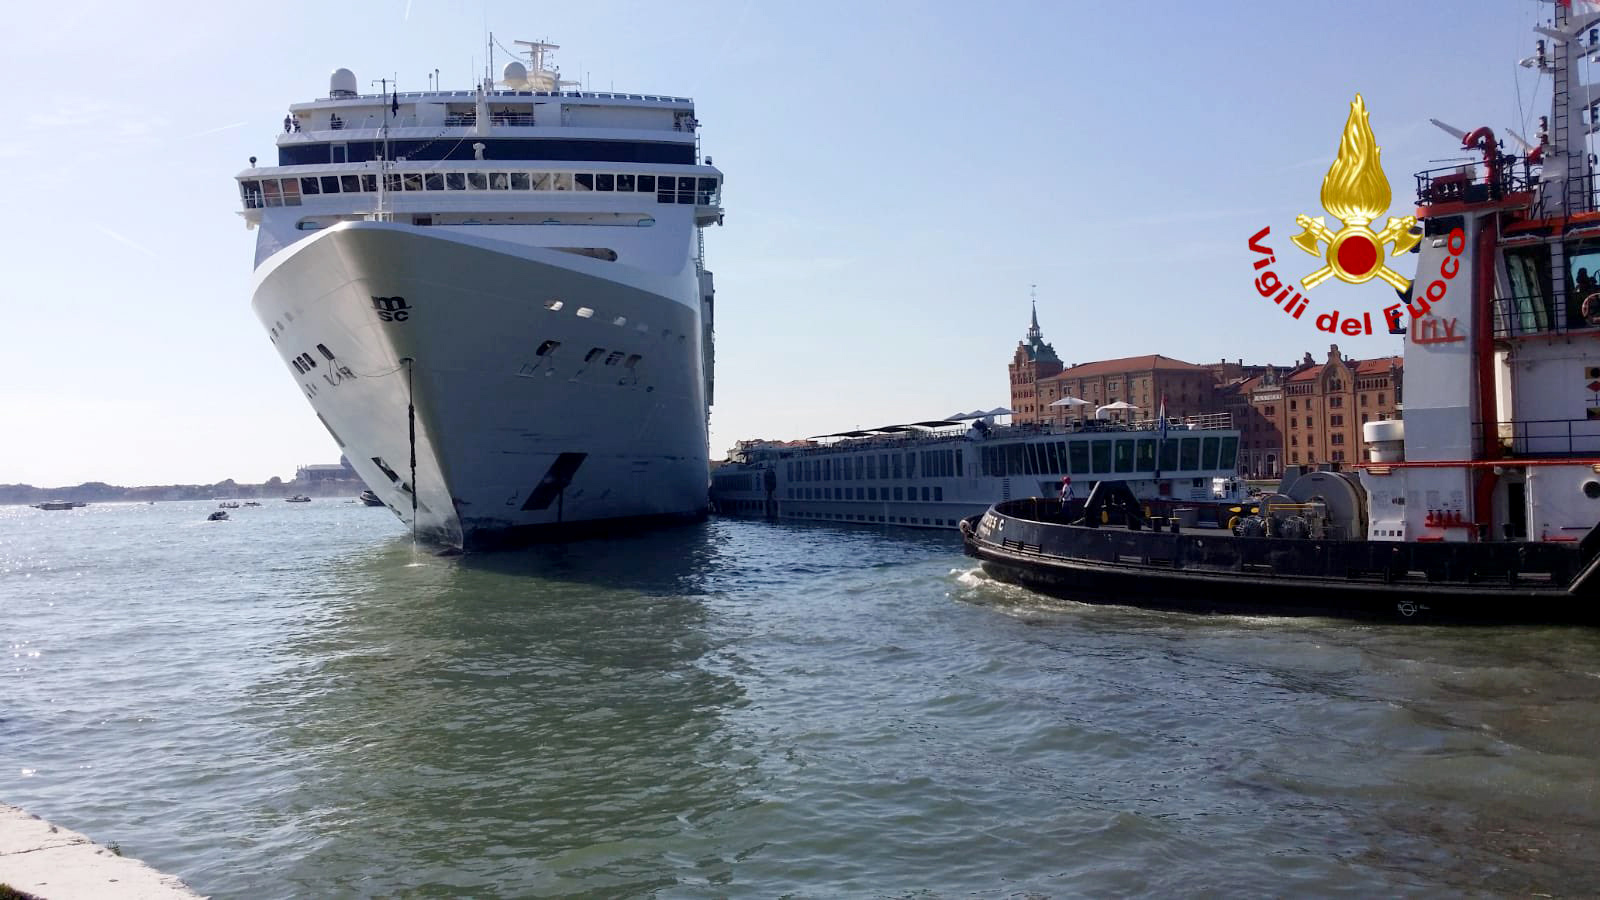 Das Kreuzfahrtschiff  "Msc Opera" ist an der Anlegestelle "San Basilio" im Kanal von Giudecca mit einem Touristenboot zusammengestoßen. | dpa